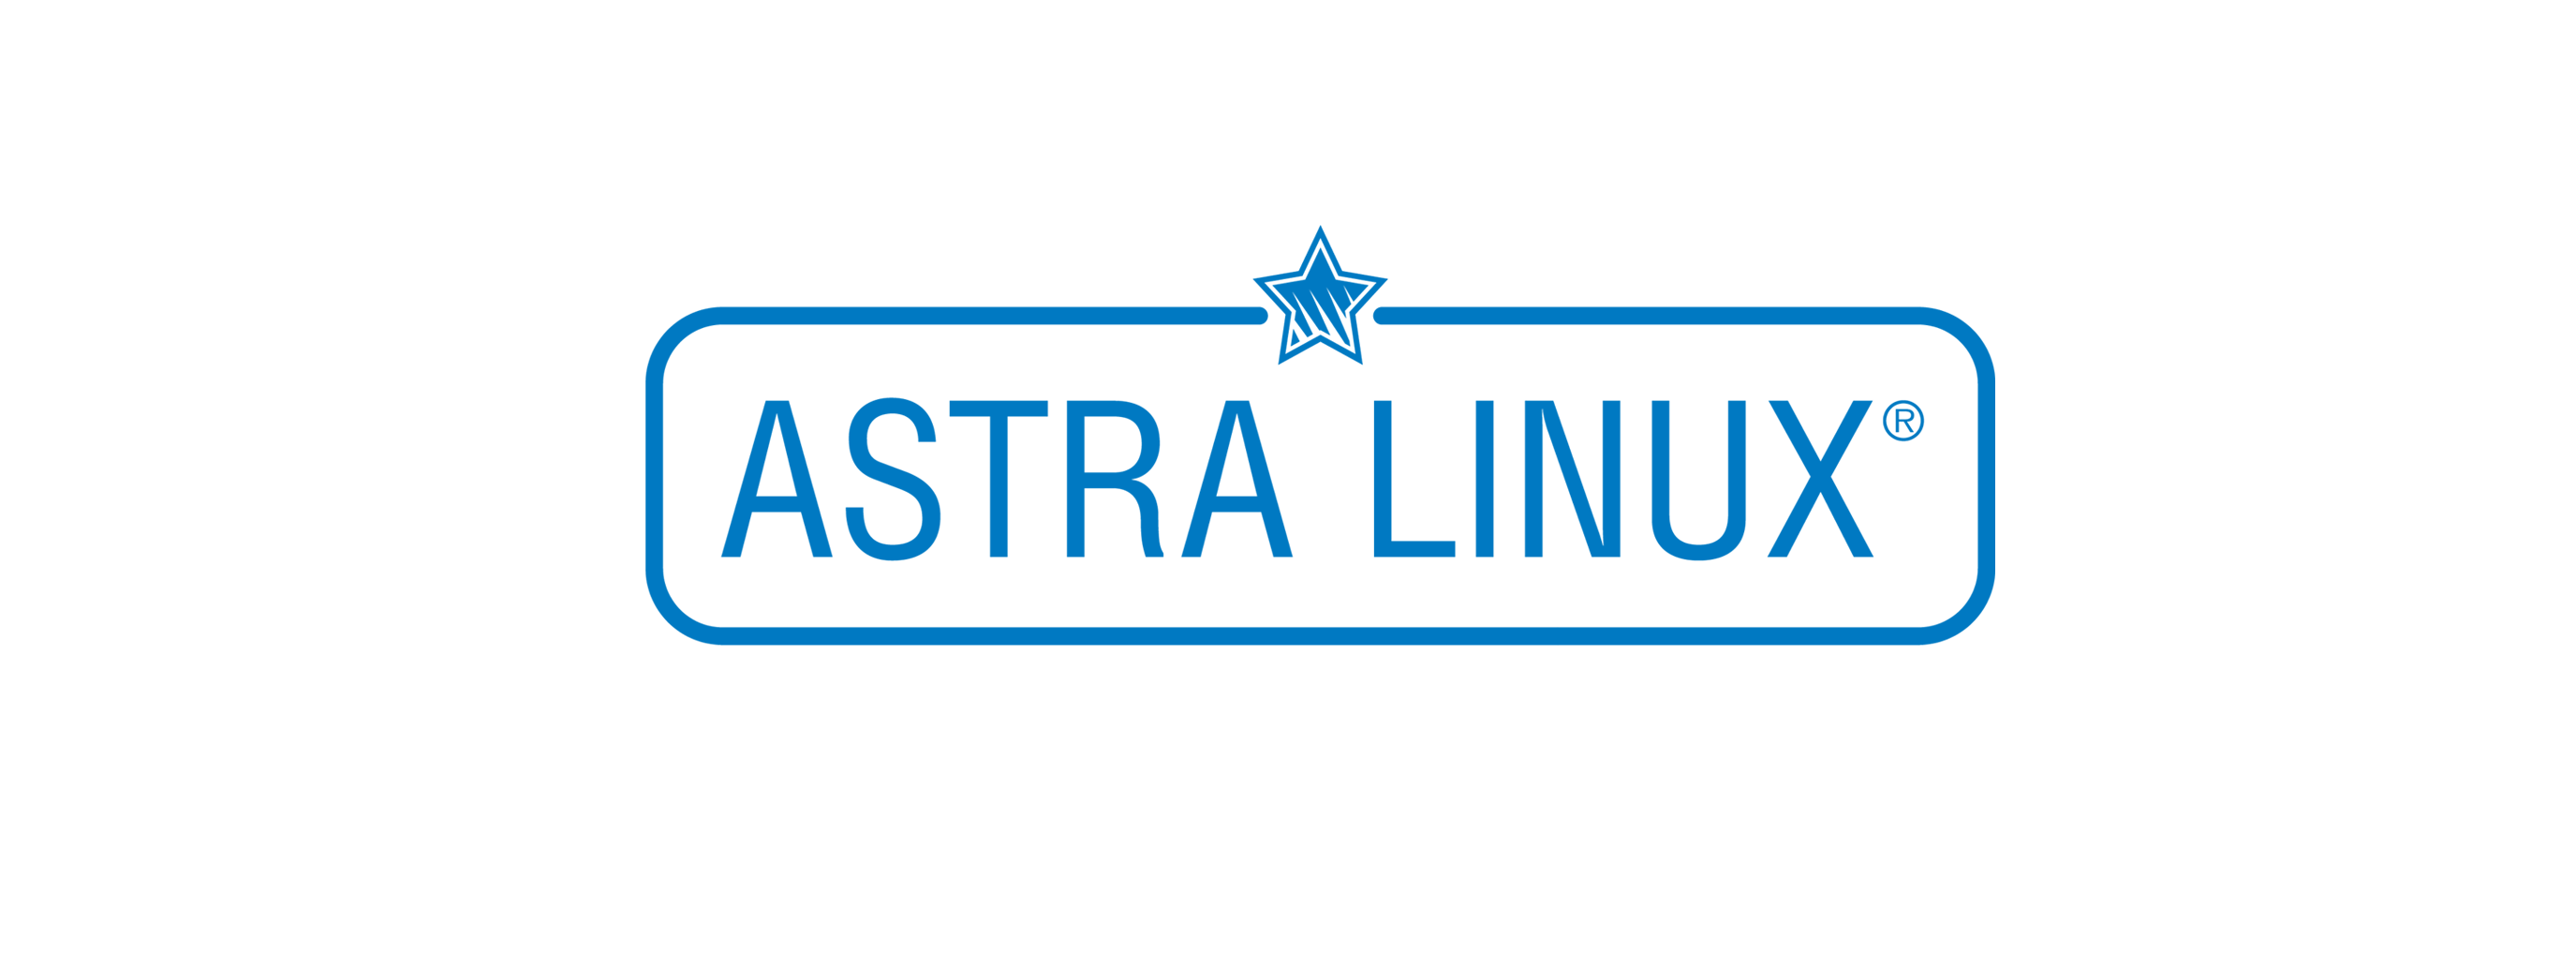 Лицензия РусБИТех Astra Linux Special Edition (очередное обновление 1.7), уровень защищенности Максимальный (Смоленск), РУСБ.10015-01 (МО), Russian, на срок действия исключительного права базовая лицензия для рабочей станции, электронный ключ (OS2102X8617